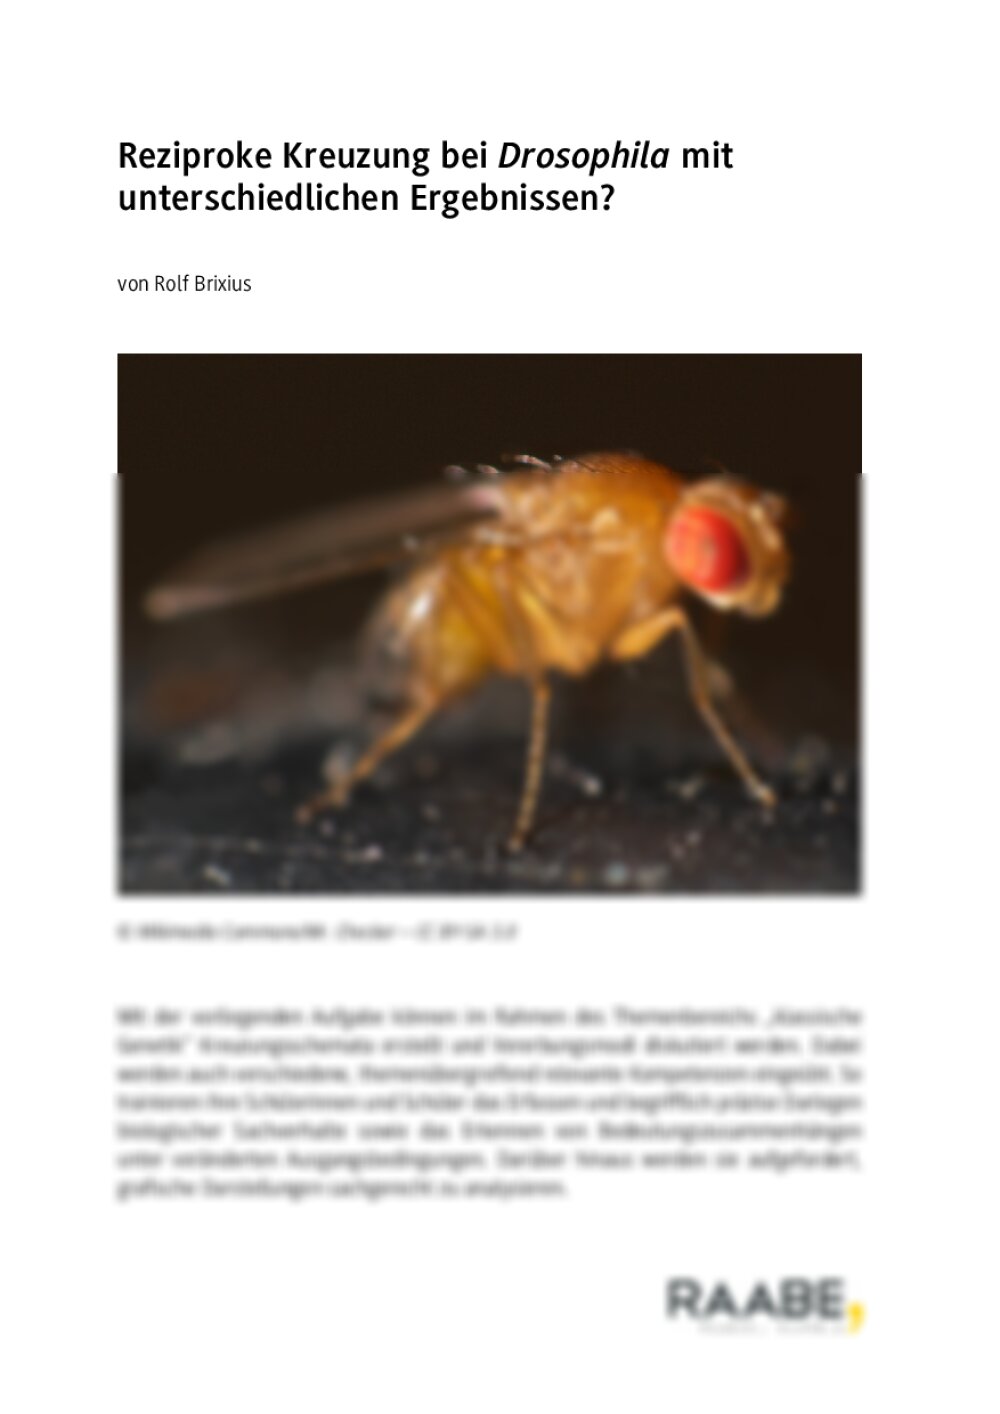 Reziproke Kreuzung bei Drosophila - Seite 1